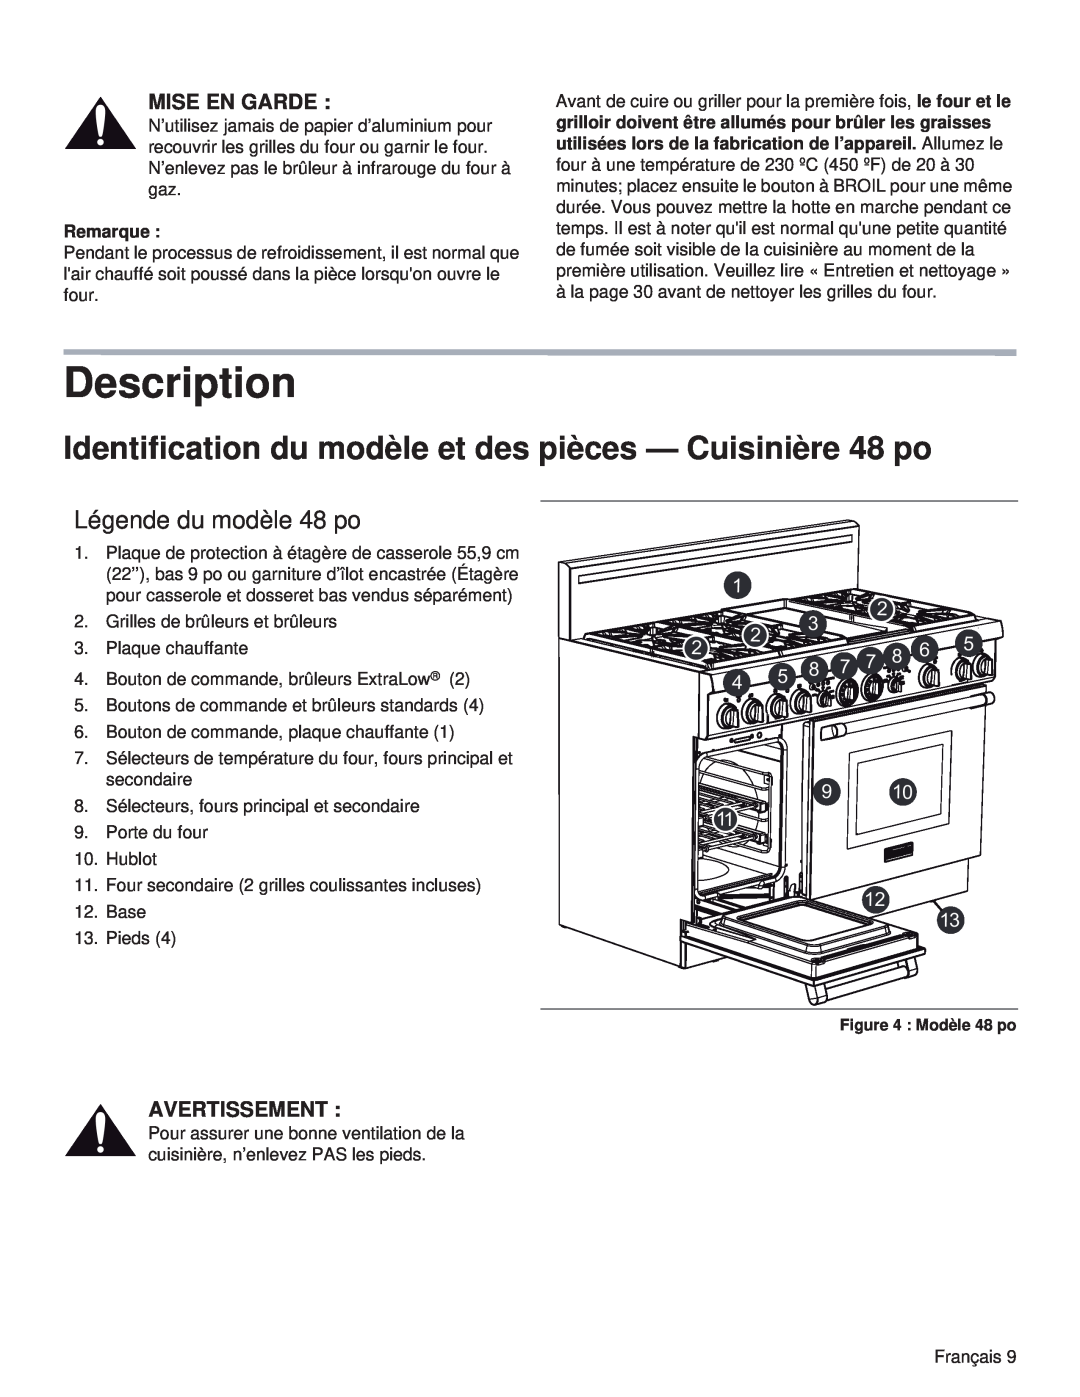 Thermador PRG48, PRL36 Identification du modèle et des pièces - Cuisinière 48 po, Légende du modèle 48 po, Description 